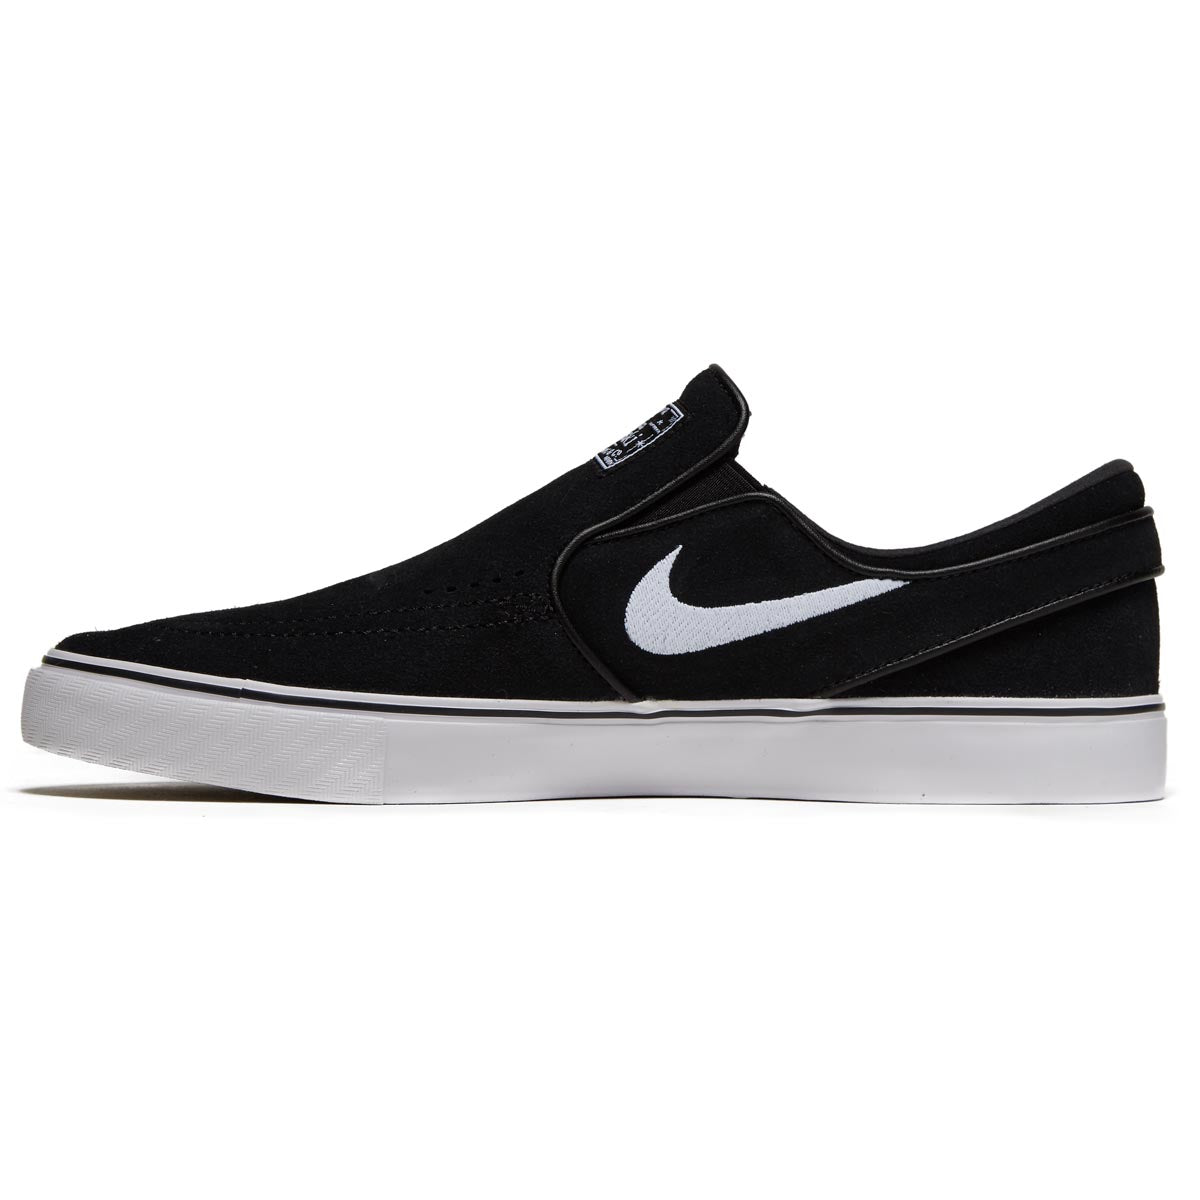 Nike SB Janoski+ Slip Shoes - Black/White/Black/Black image 2